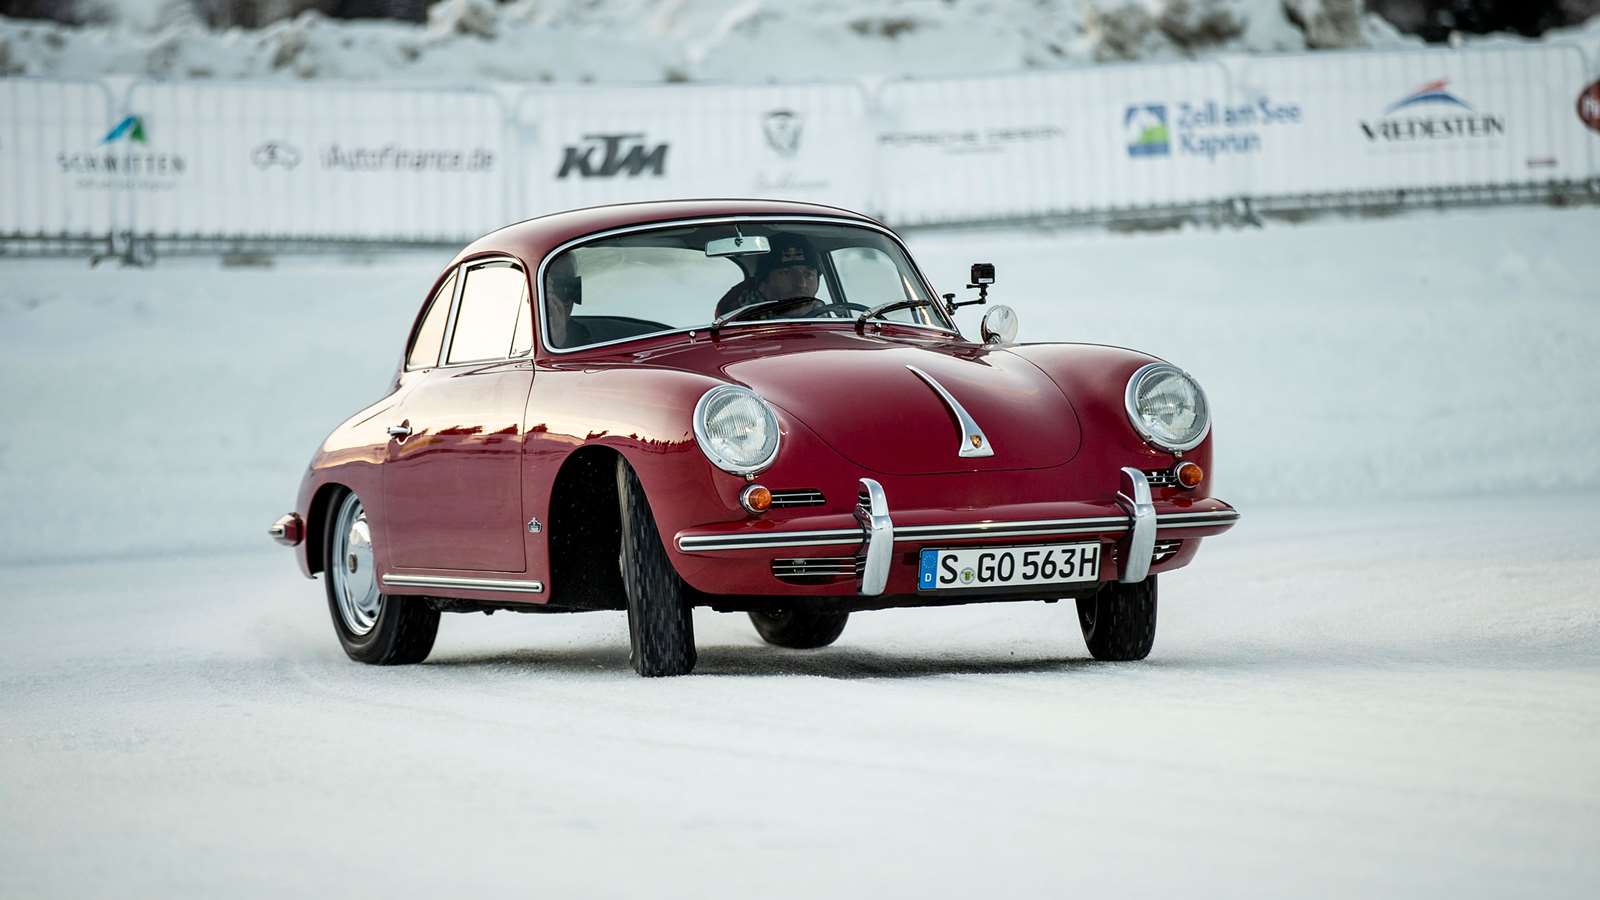 A red Porsche 356.